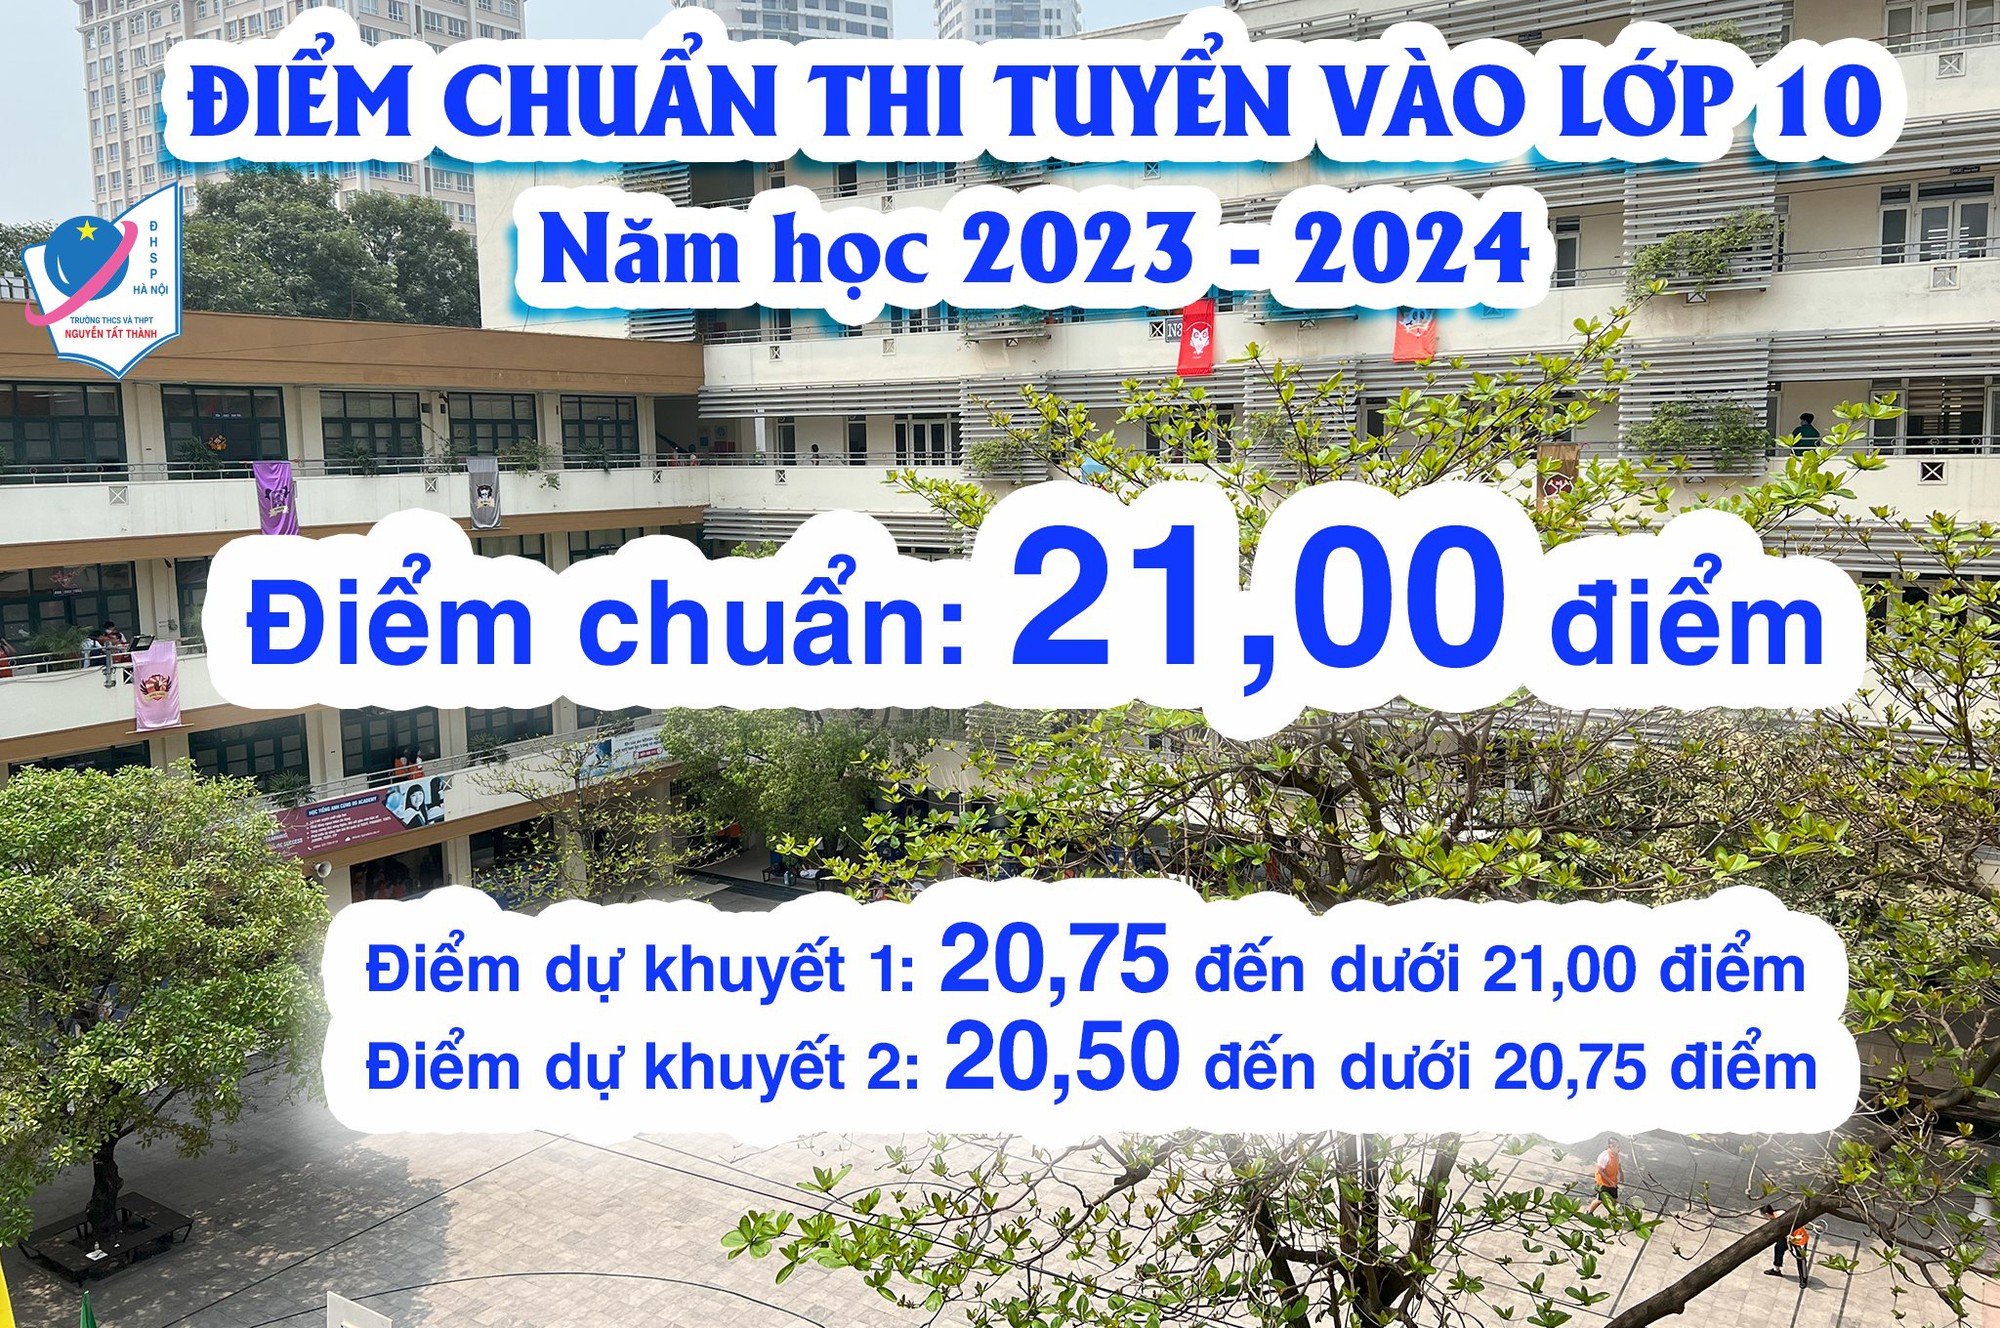 Công bố điểm chuẩn vào lớp 10 THPT Nguyễn Tất Thành năm 2023: Cao hơn năm trước - Ảnh 1.